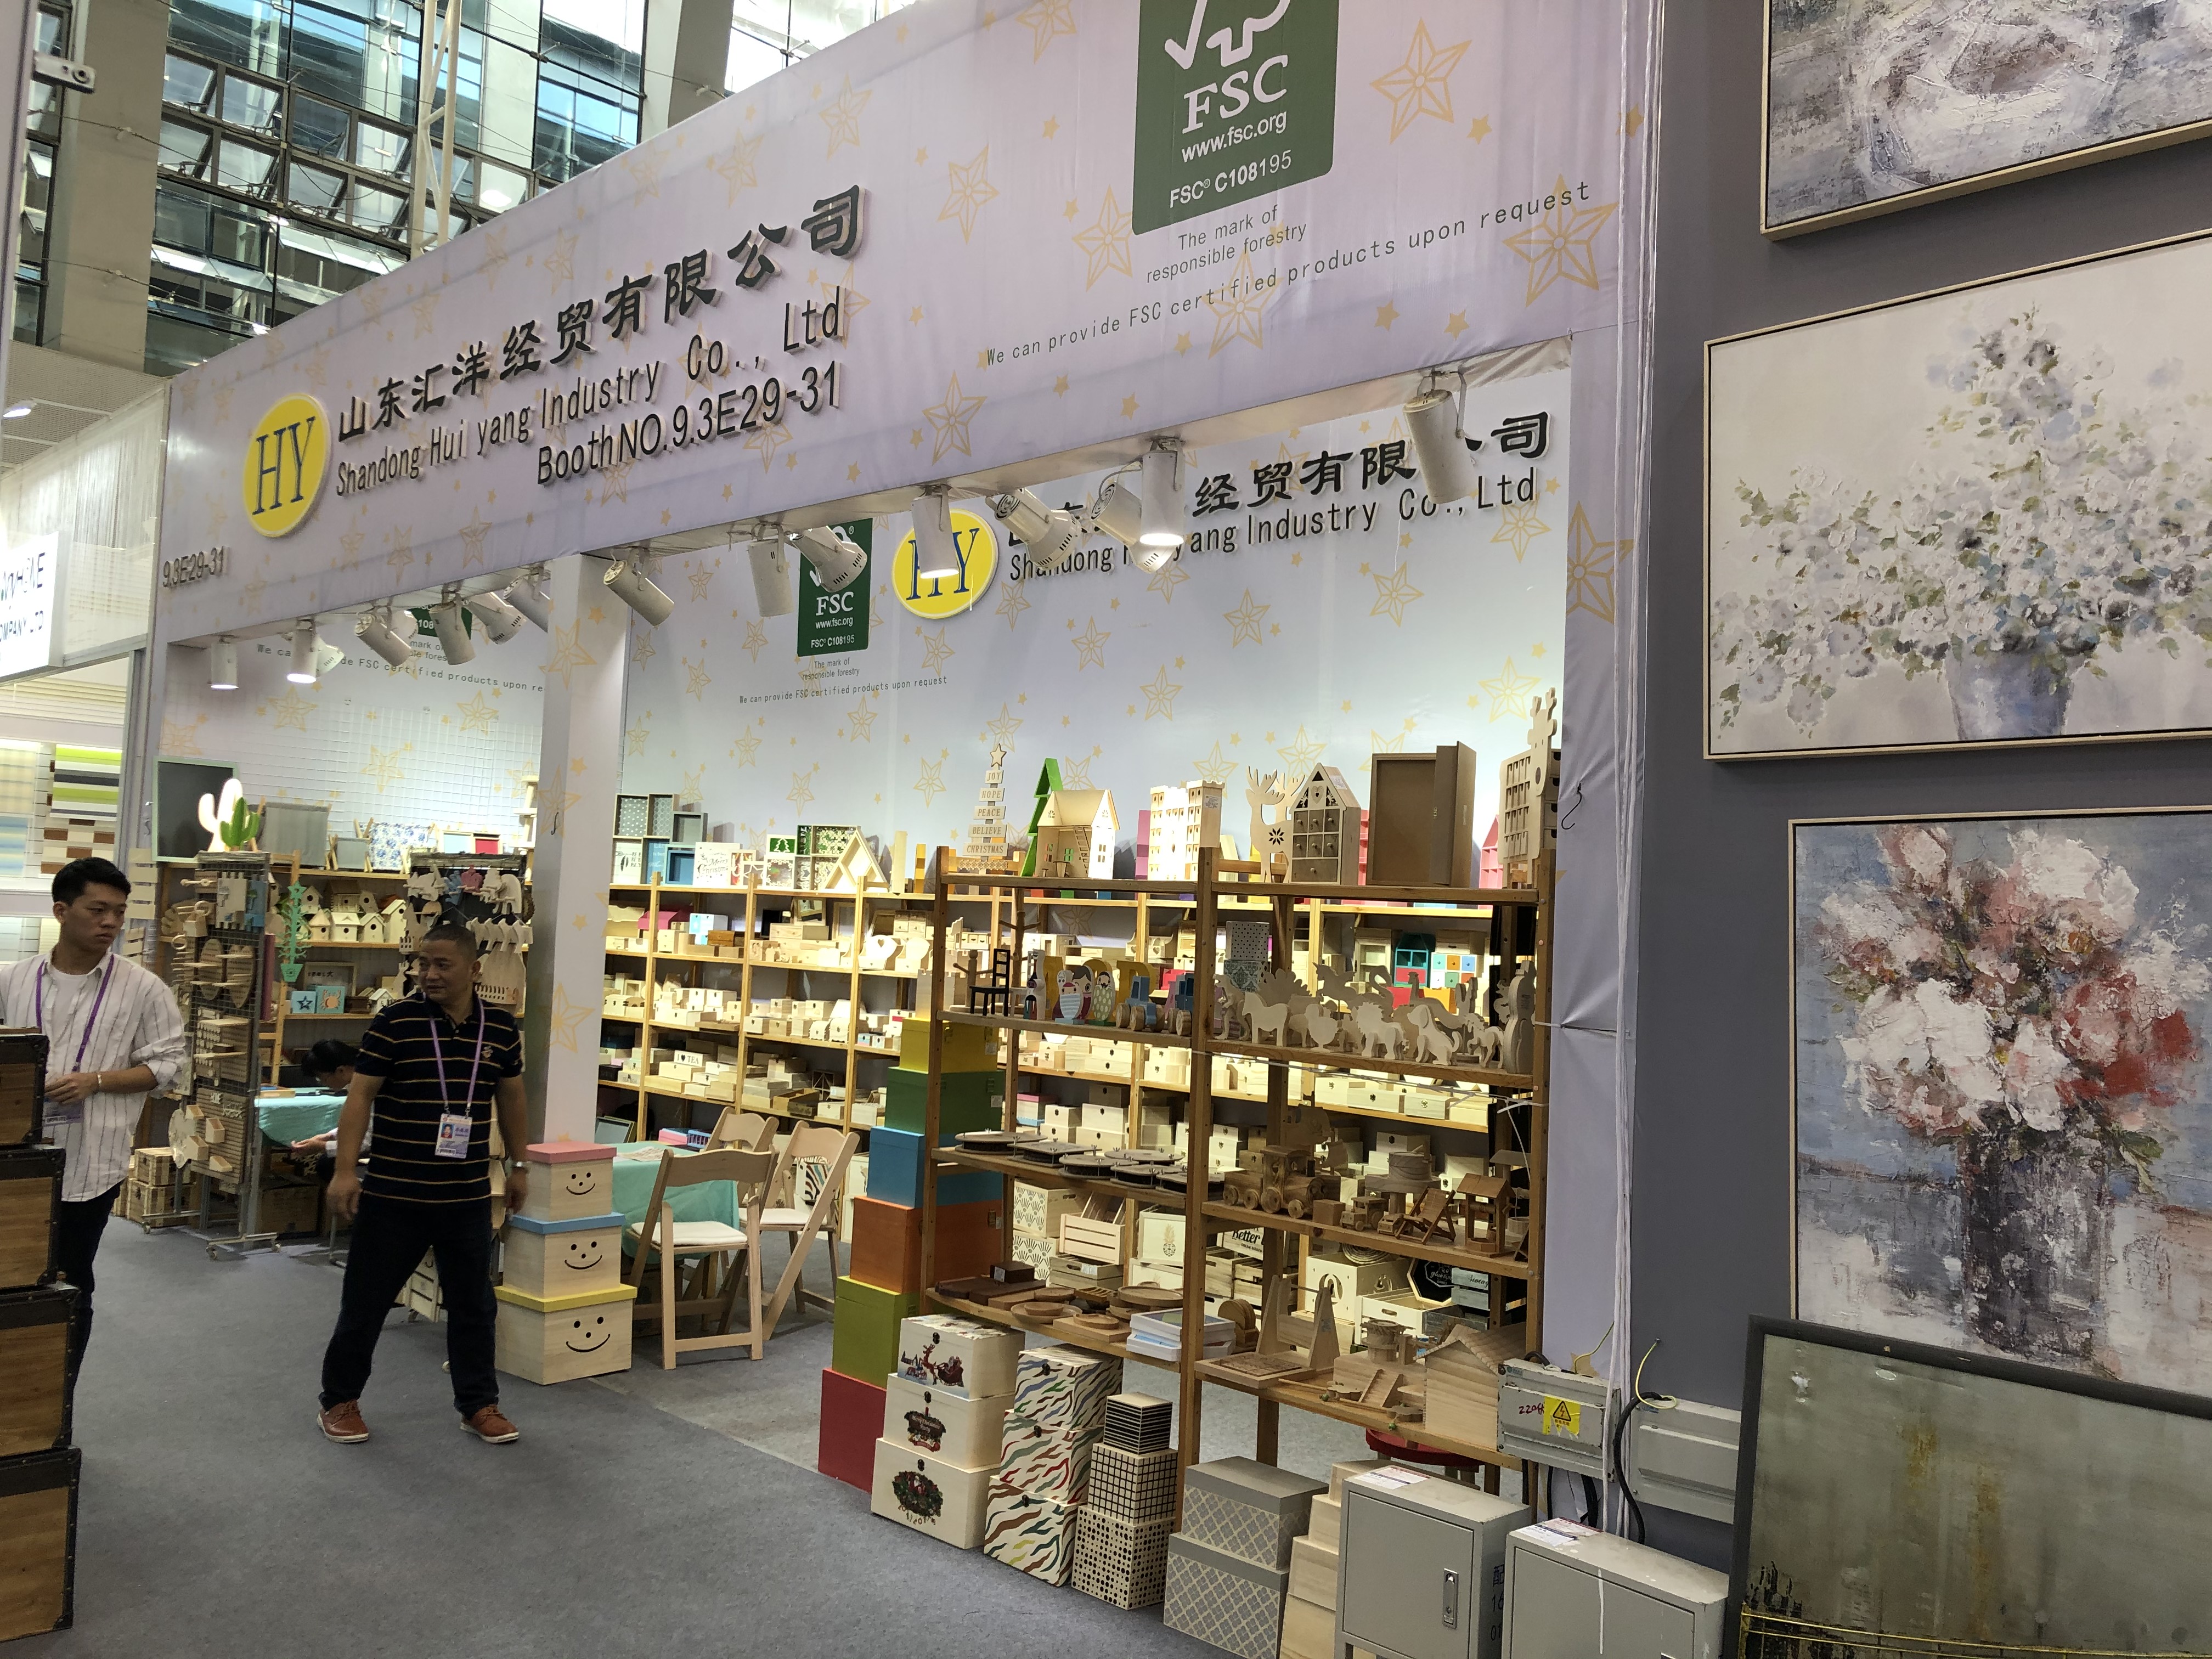 शेडोंग हुआयांग लकड़ी के उत्पादों के लिए एक विश्वसनीय चीन आपूर्तिकर्ता है